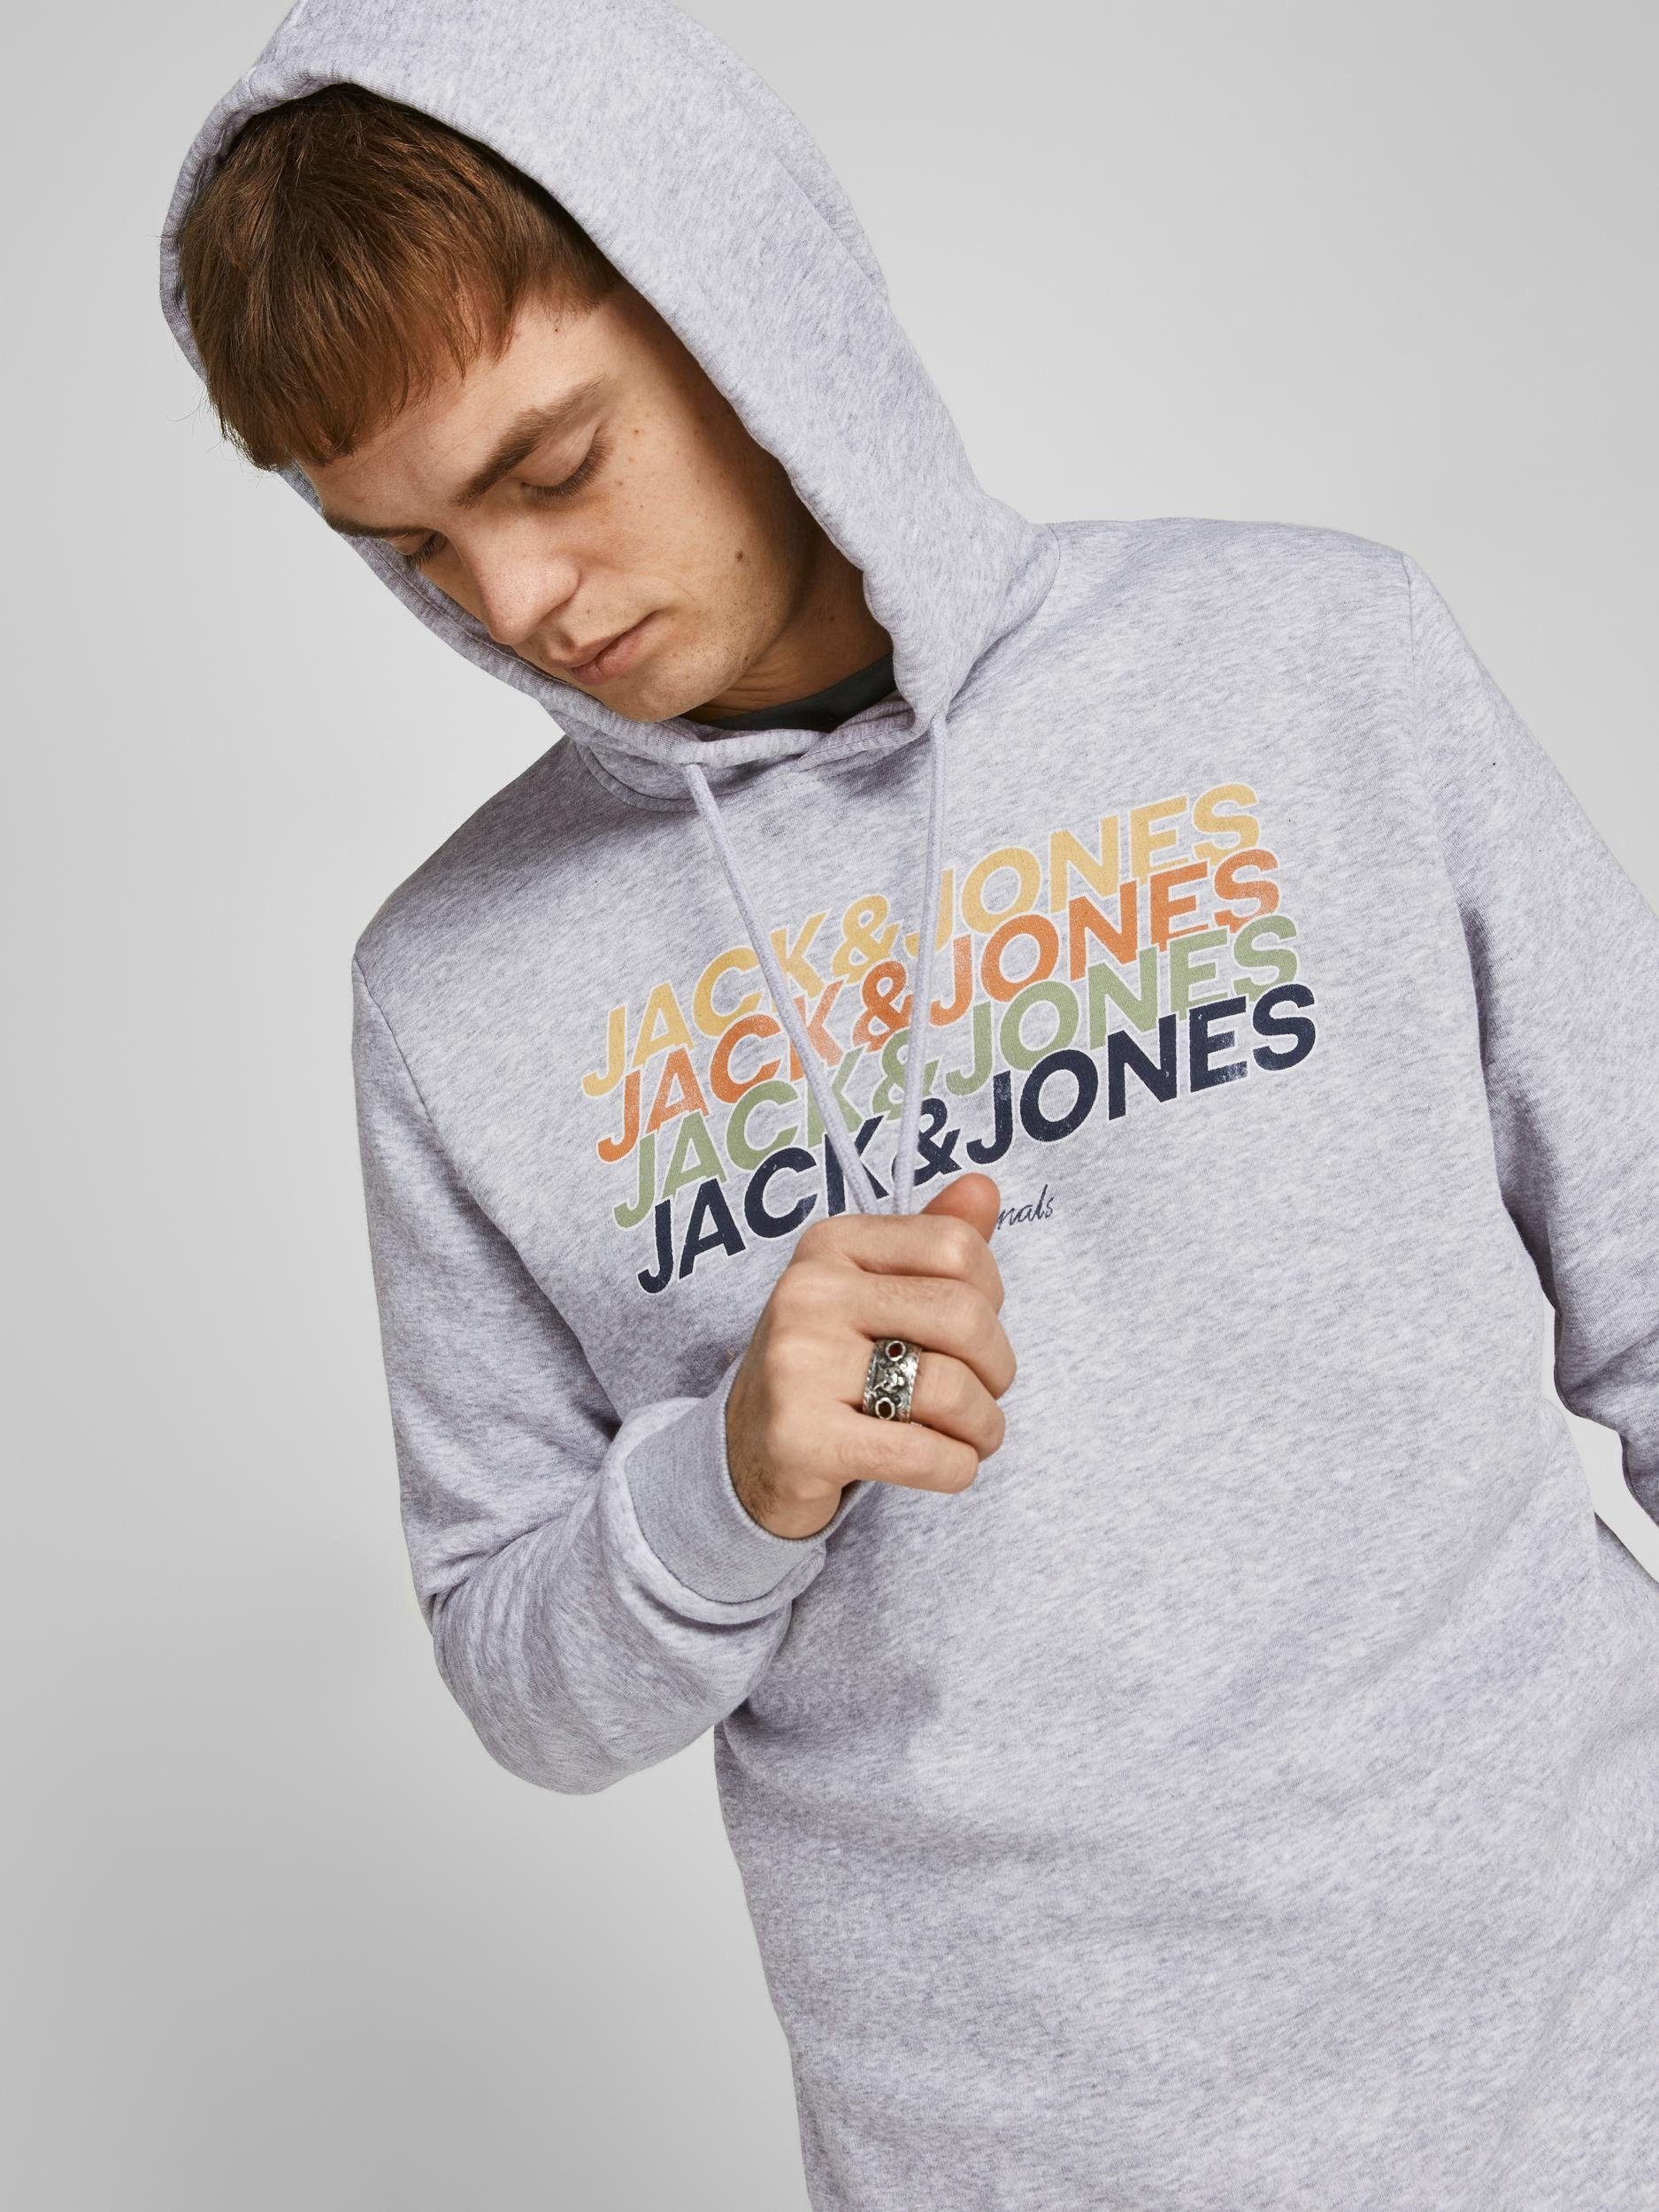 Hoodie Sweatshirt grau Jack HOOD & Jones SWEAT Kapuze mit Pullover JORBRADY